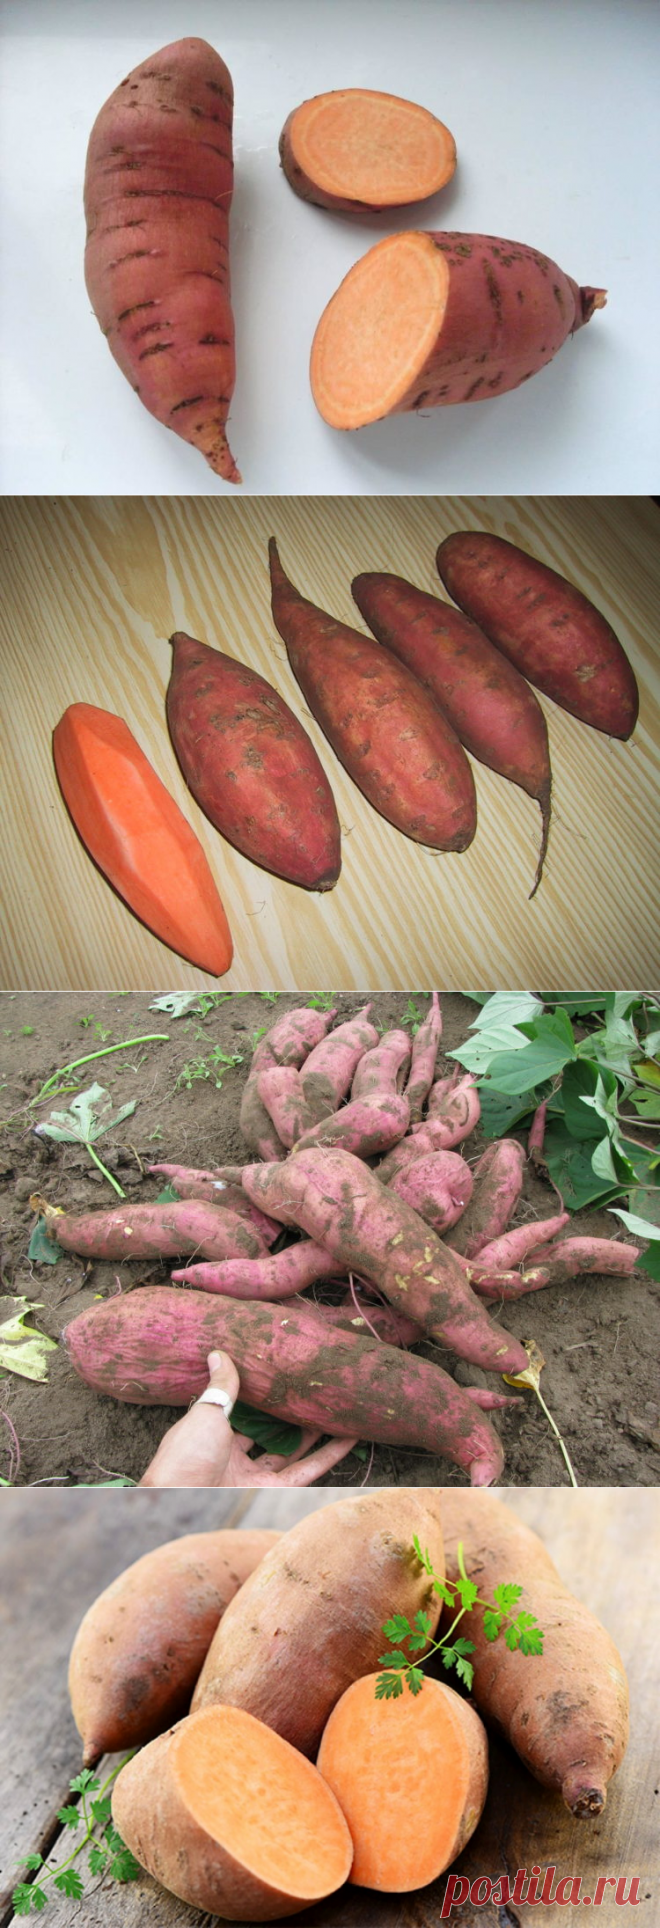 Сладкий картофель Батат: описание, как выглядит, где растет, разновидн | На  шпильках под Луной | Постила